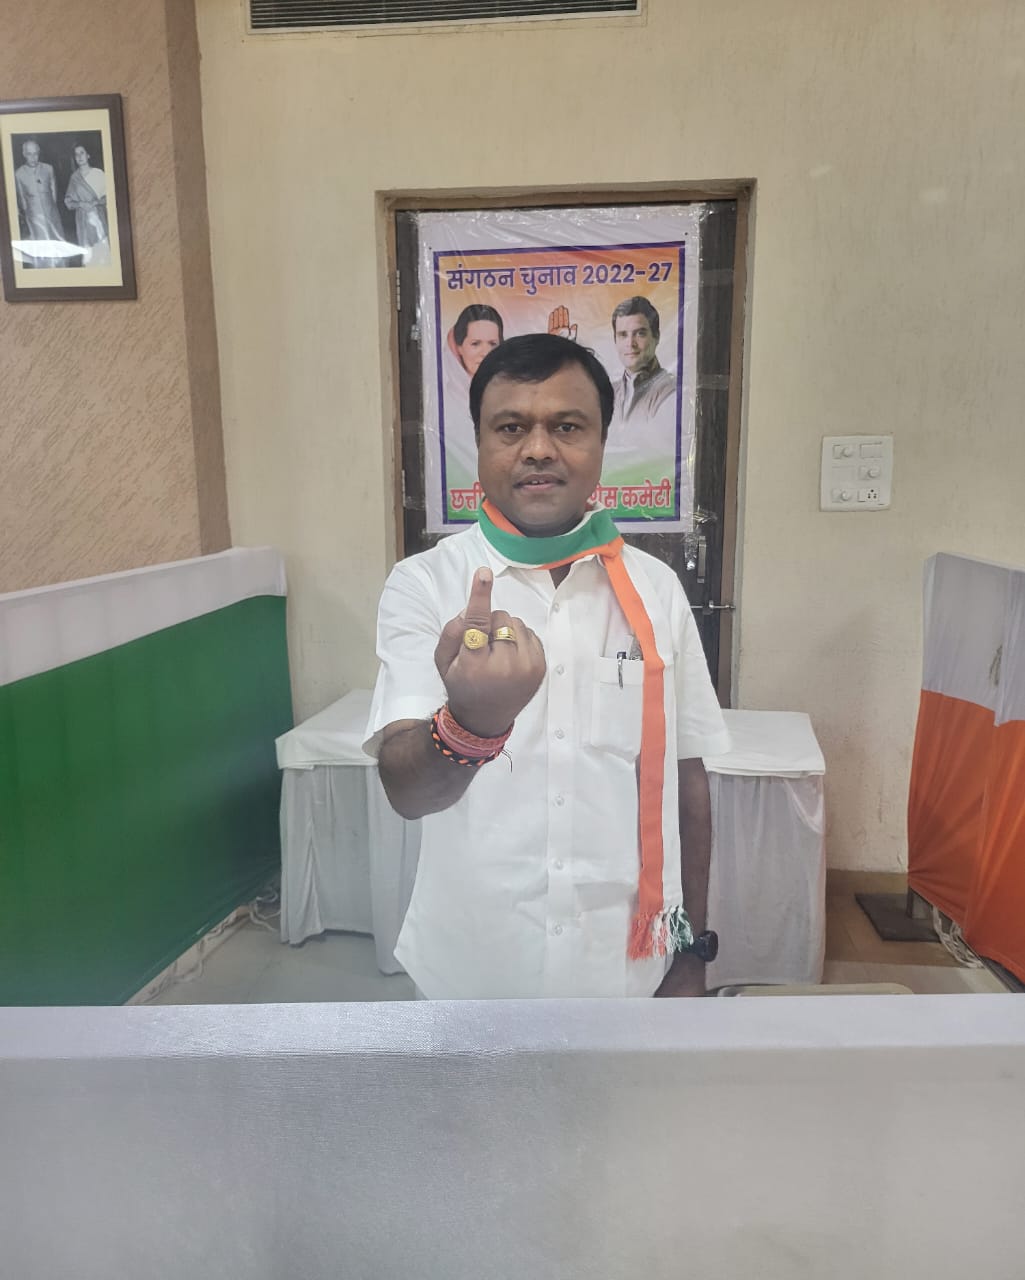 सांसद दीपक बैज ने अखिल भारतीय राष्ट्रीय कांग्रेस के अध्यक्ष पद हेतु चुनाव में किया मतदान, कहा – संगठन की मजबूती के लिये एक-एक वोट है जरूरी